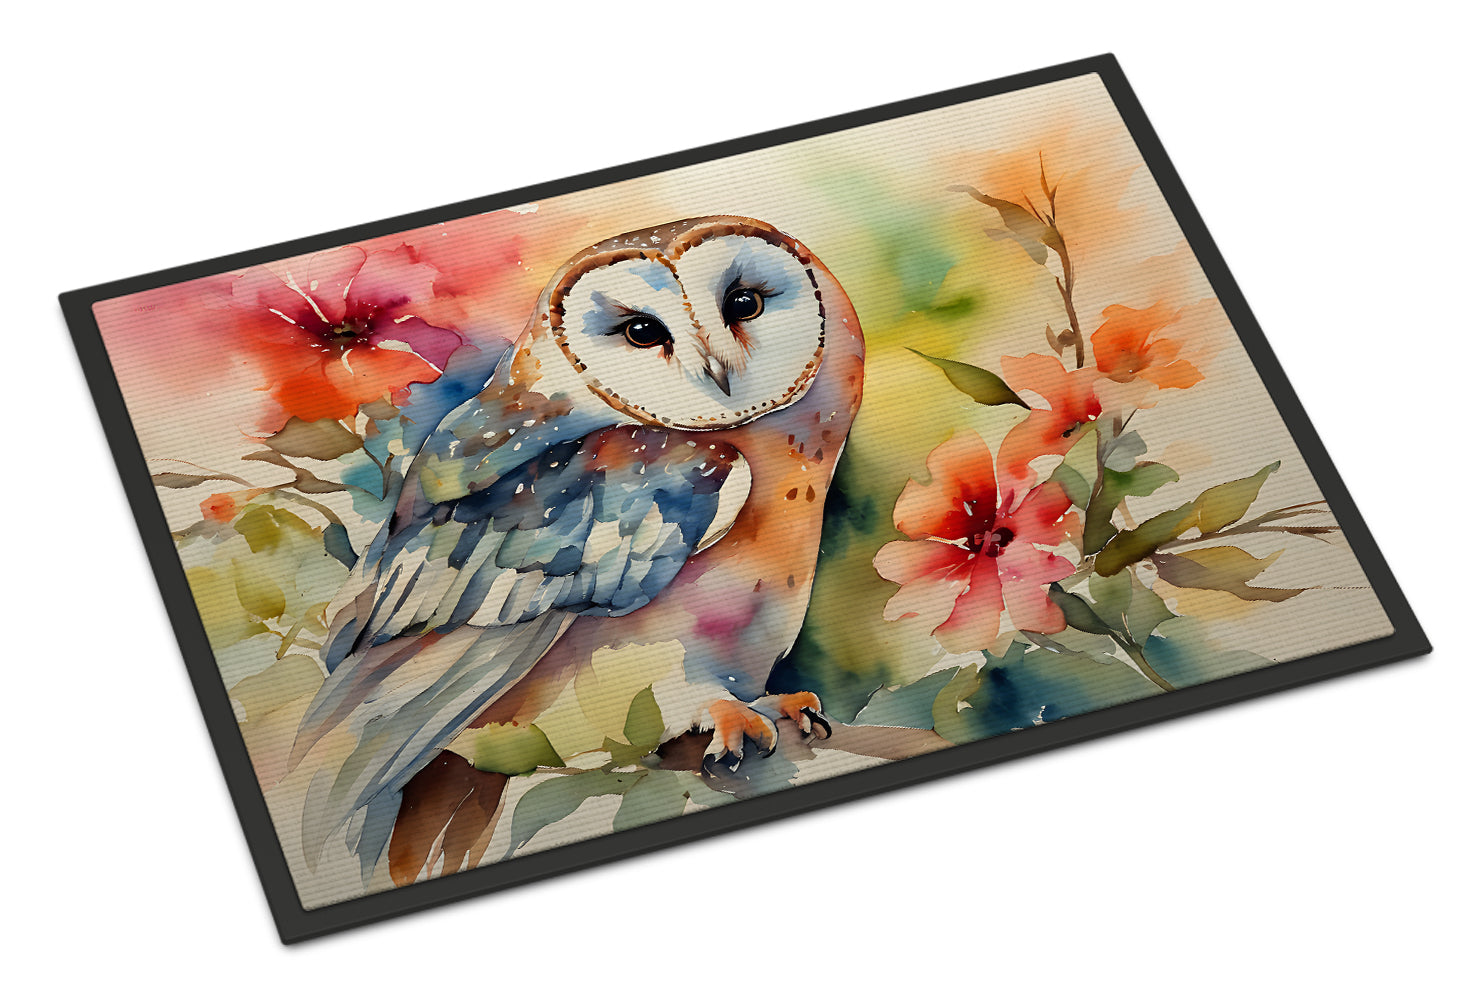 Buy this Barn Owl Doormat